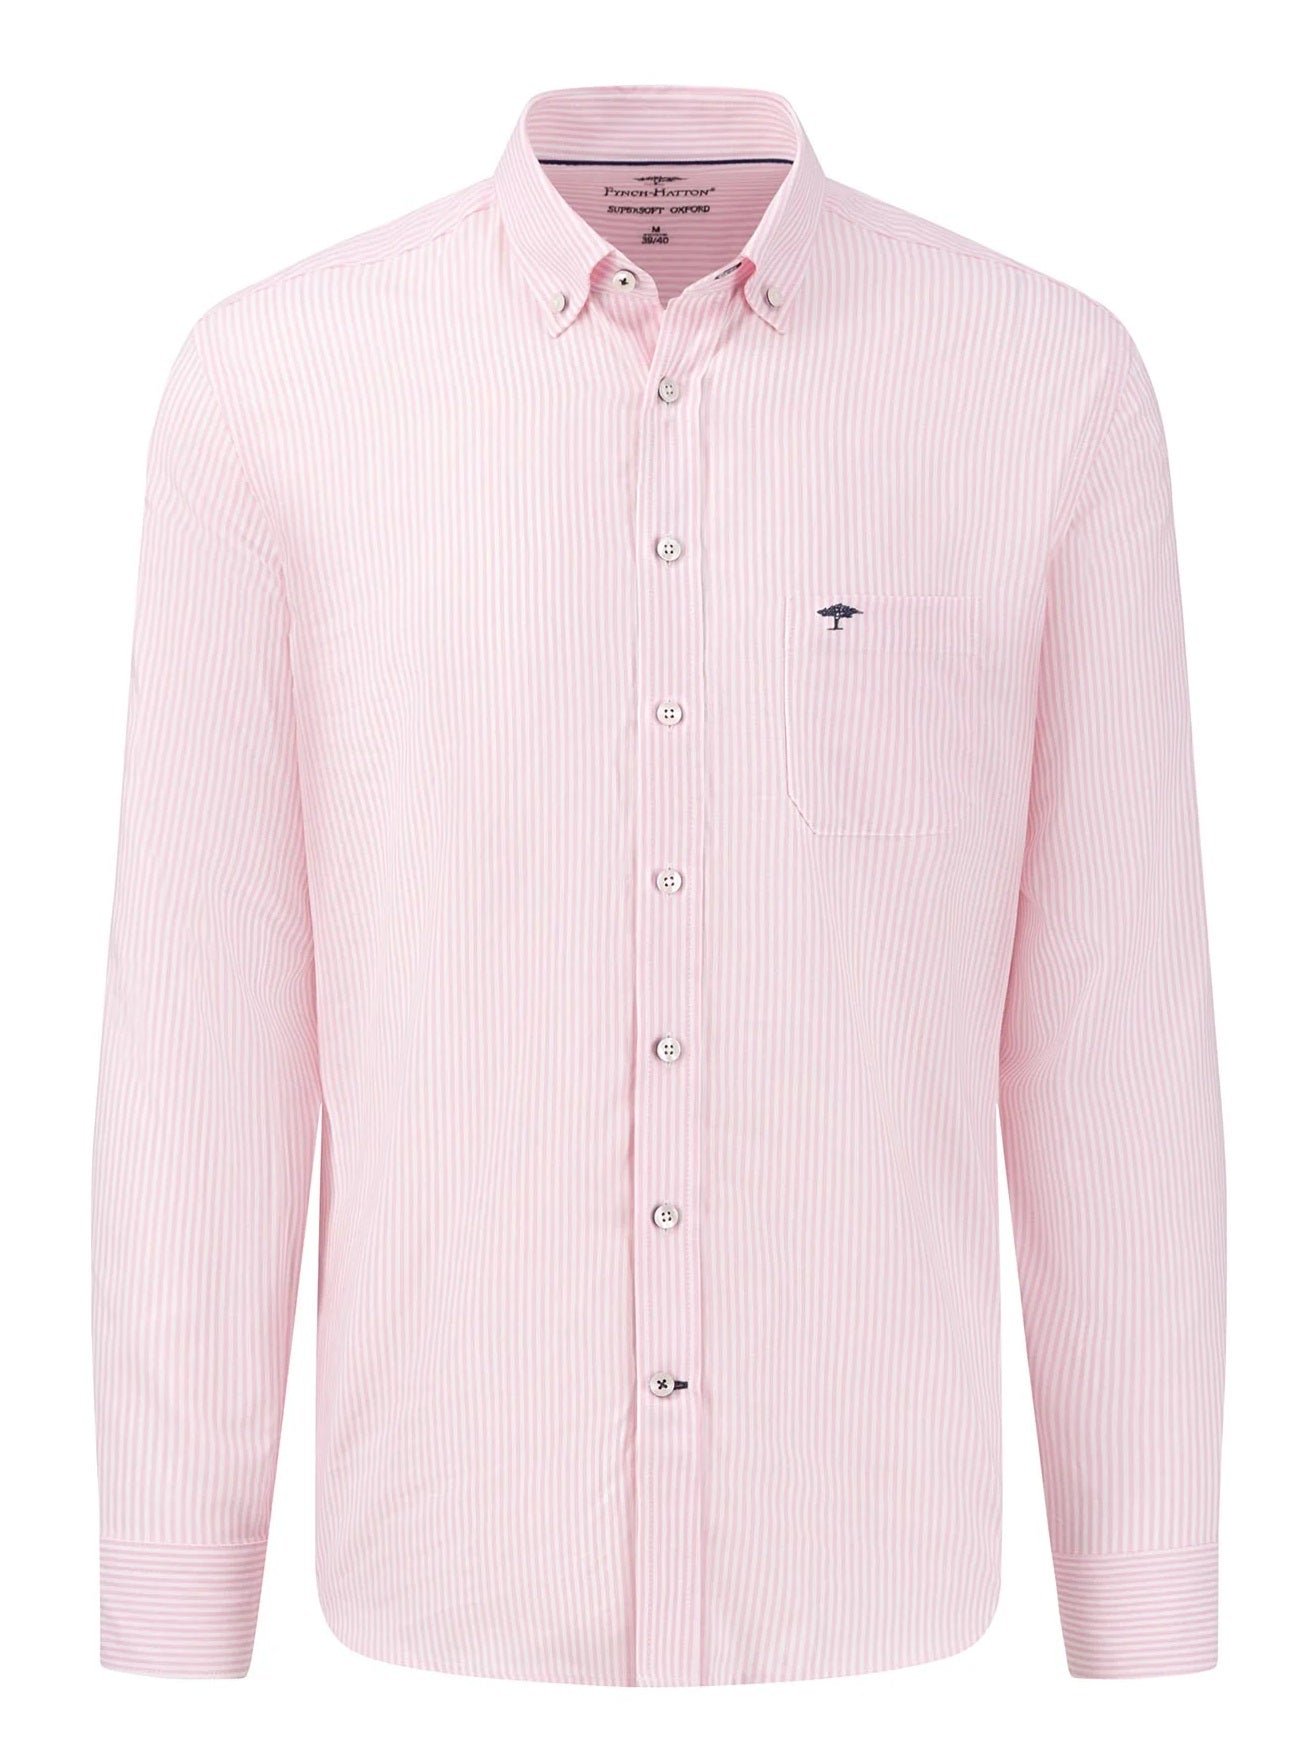 FYNCH HATTON Oxford Shirt - Men's Soft Cotton – Pink Stripe